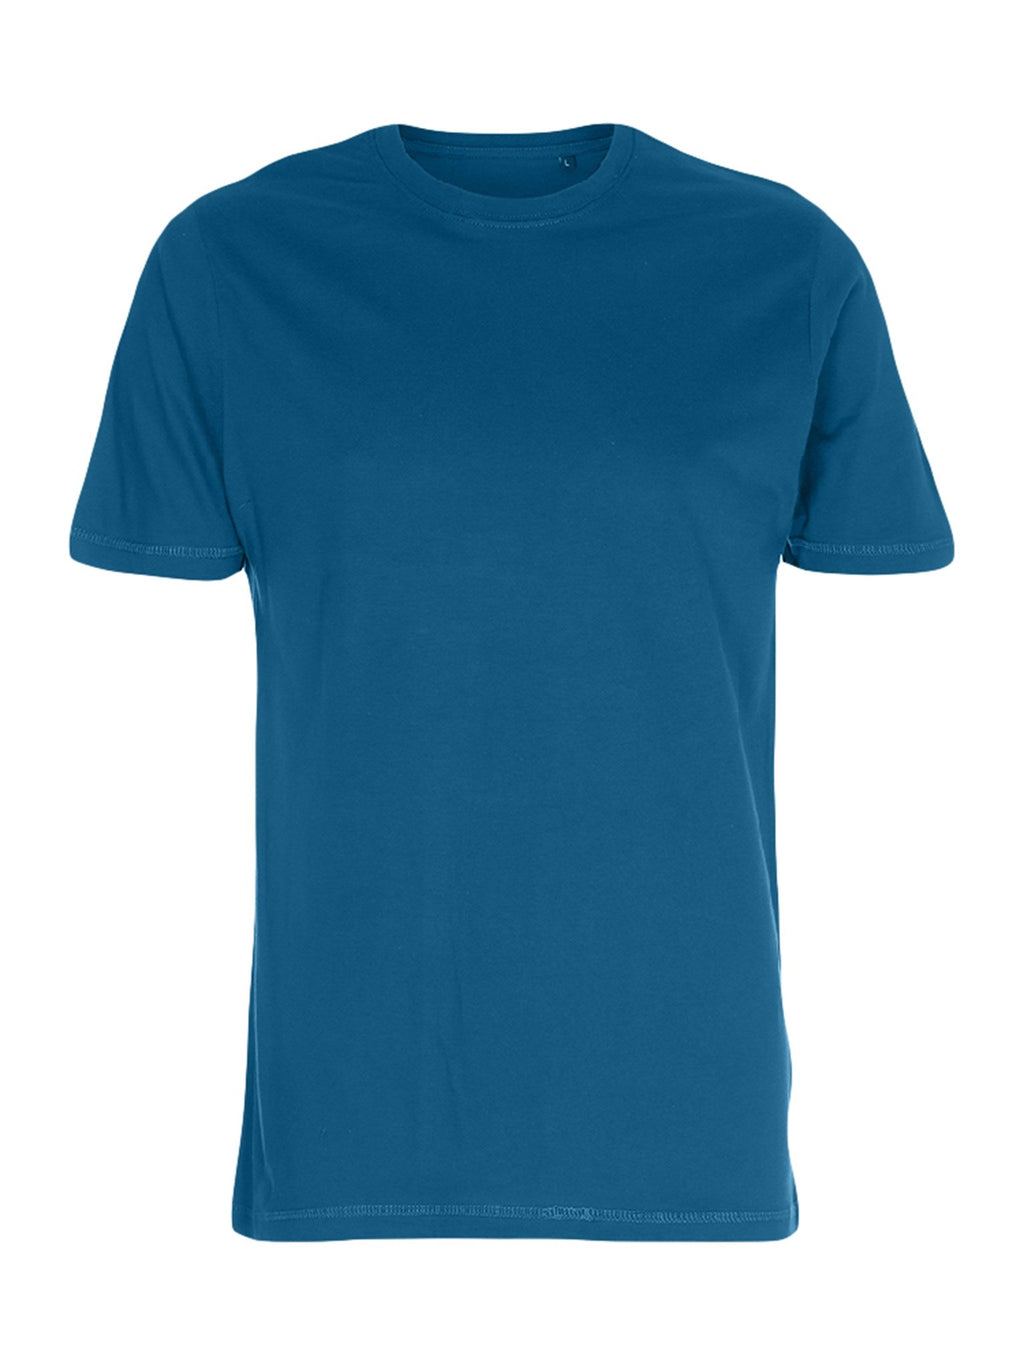 Organska osnovna majica - benzinska plava